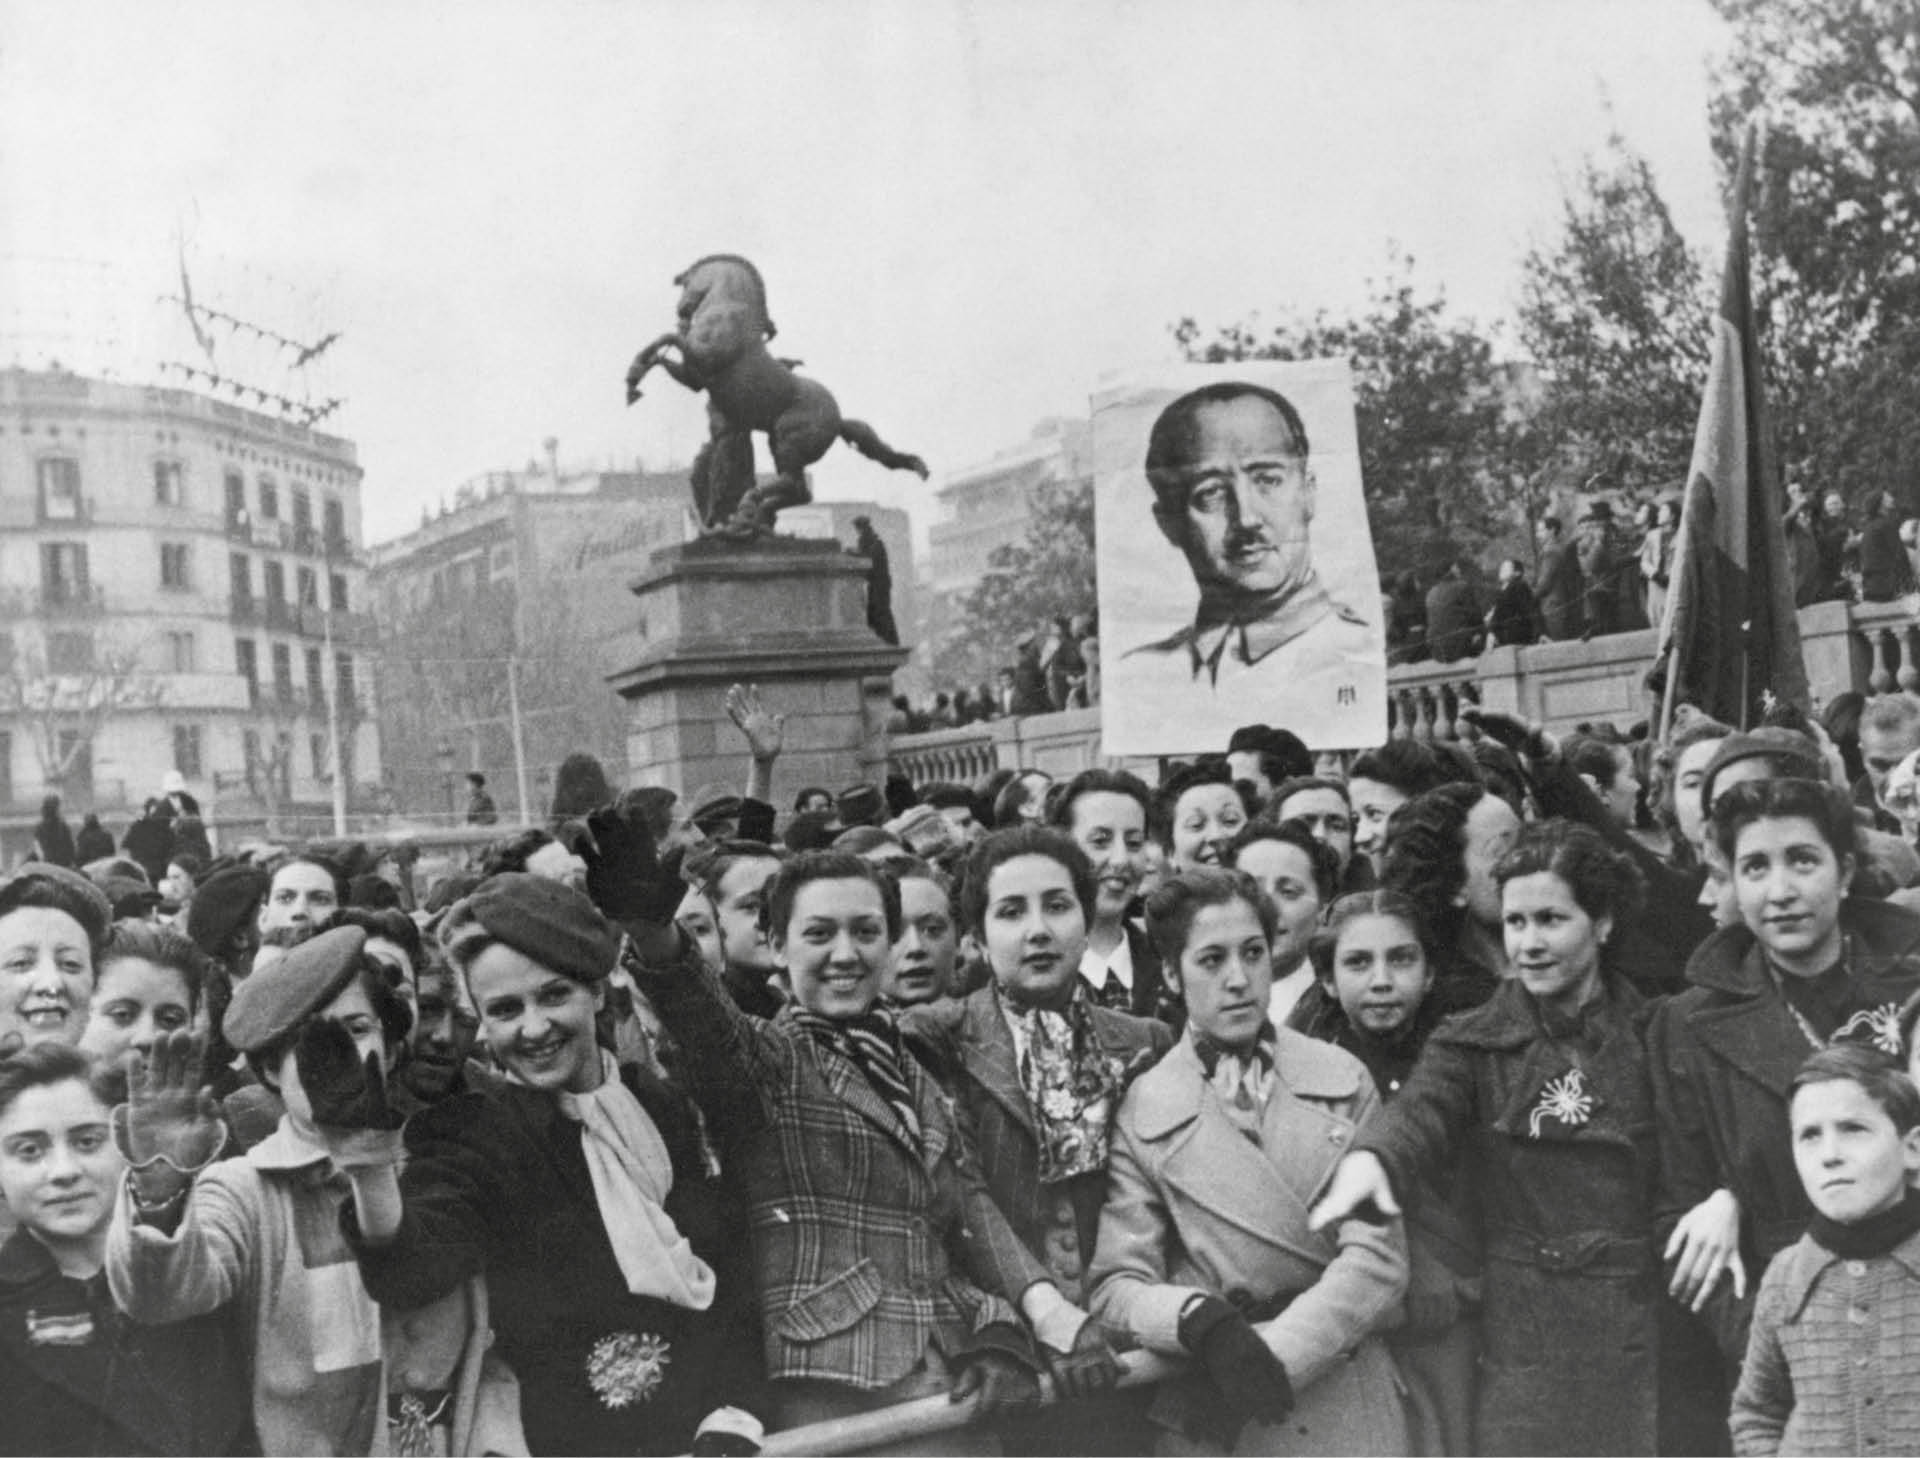 Barcelona, czasy wojny domowej. Ludność wita wojska gen. Franco. Fotografia niedatowana